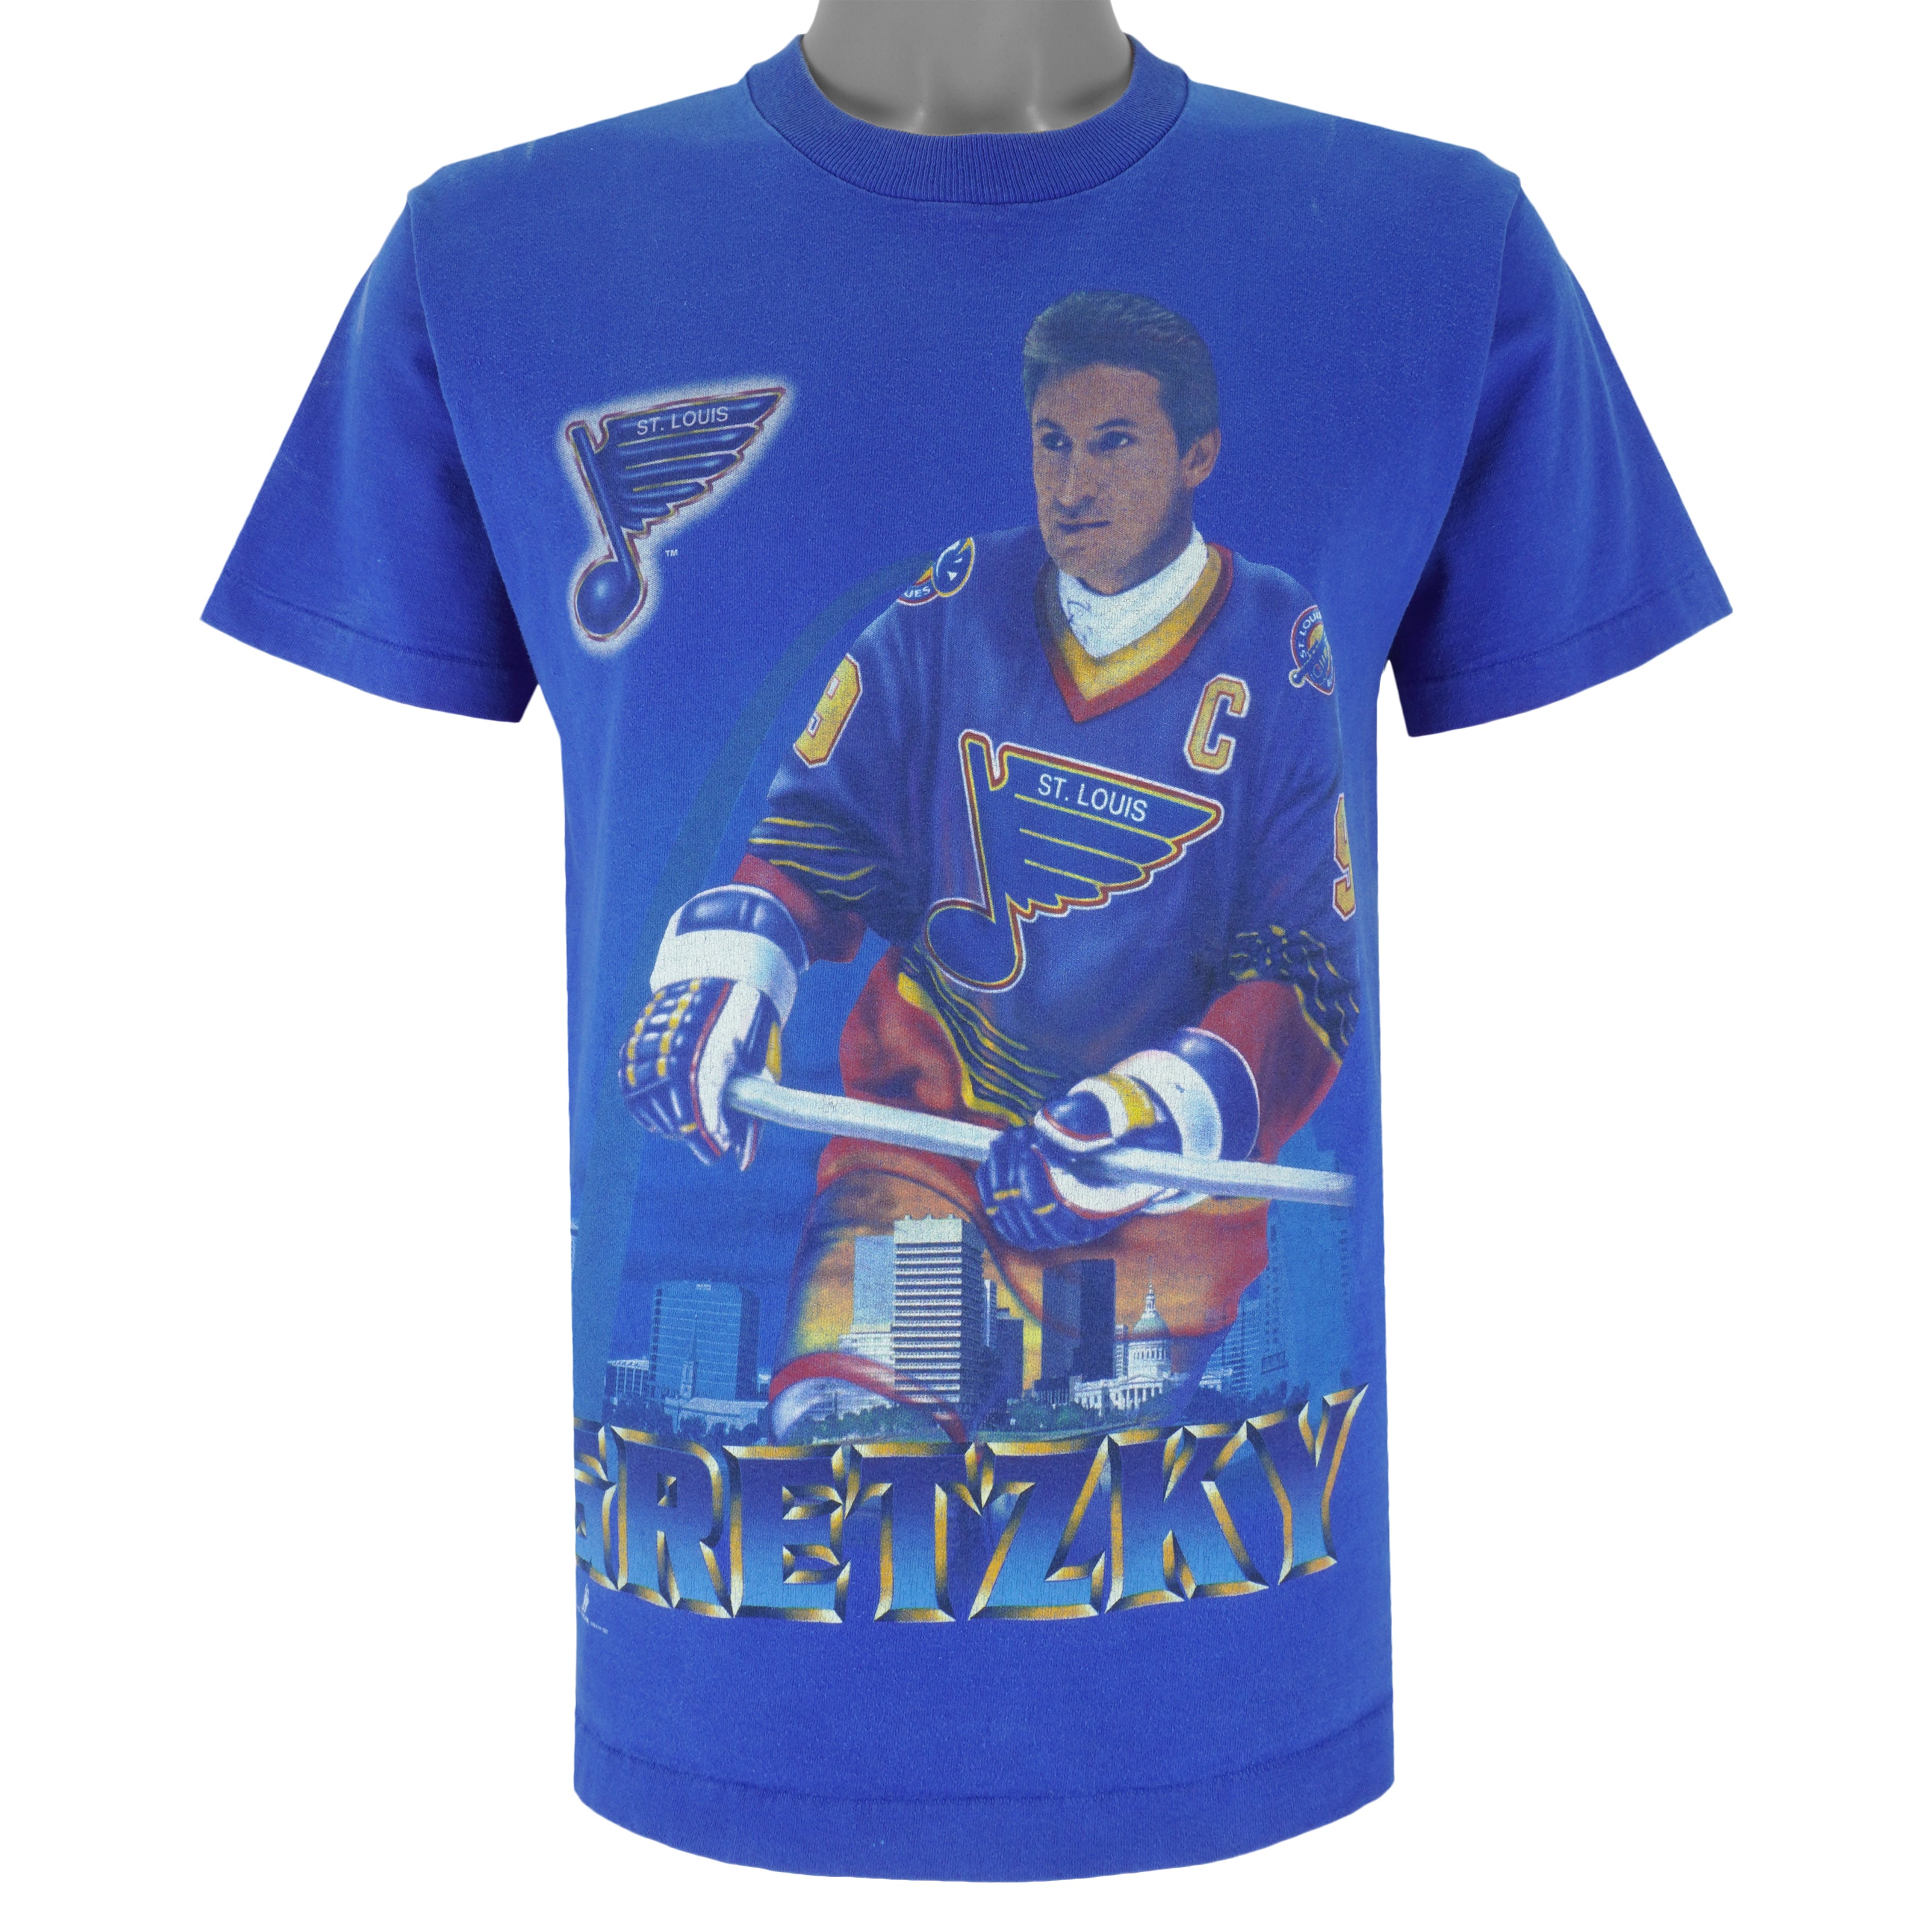 St. Louis Blues Jerseys & Teamwear, NHL Merchandise